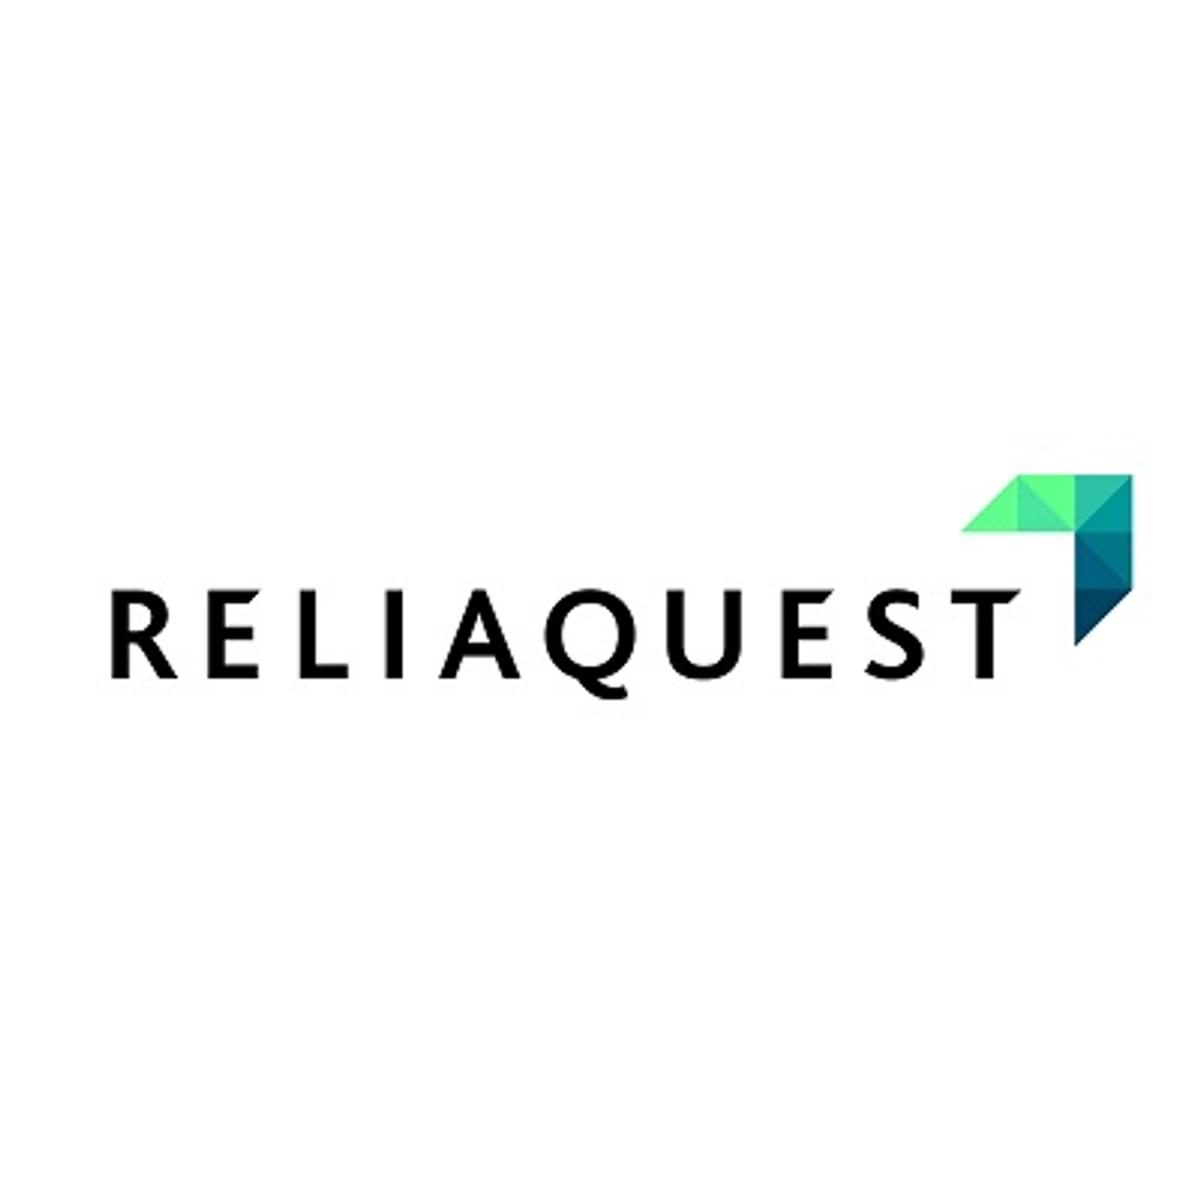 ReliaQuest haalt dikke driehonderd miljoen dollar aan groeifinanciering op image